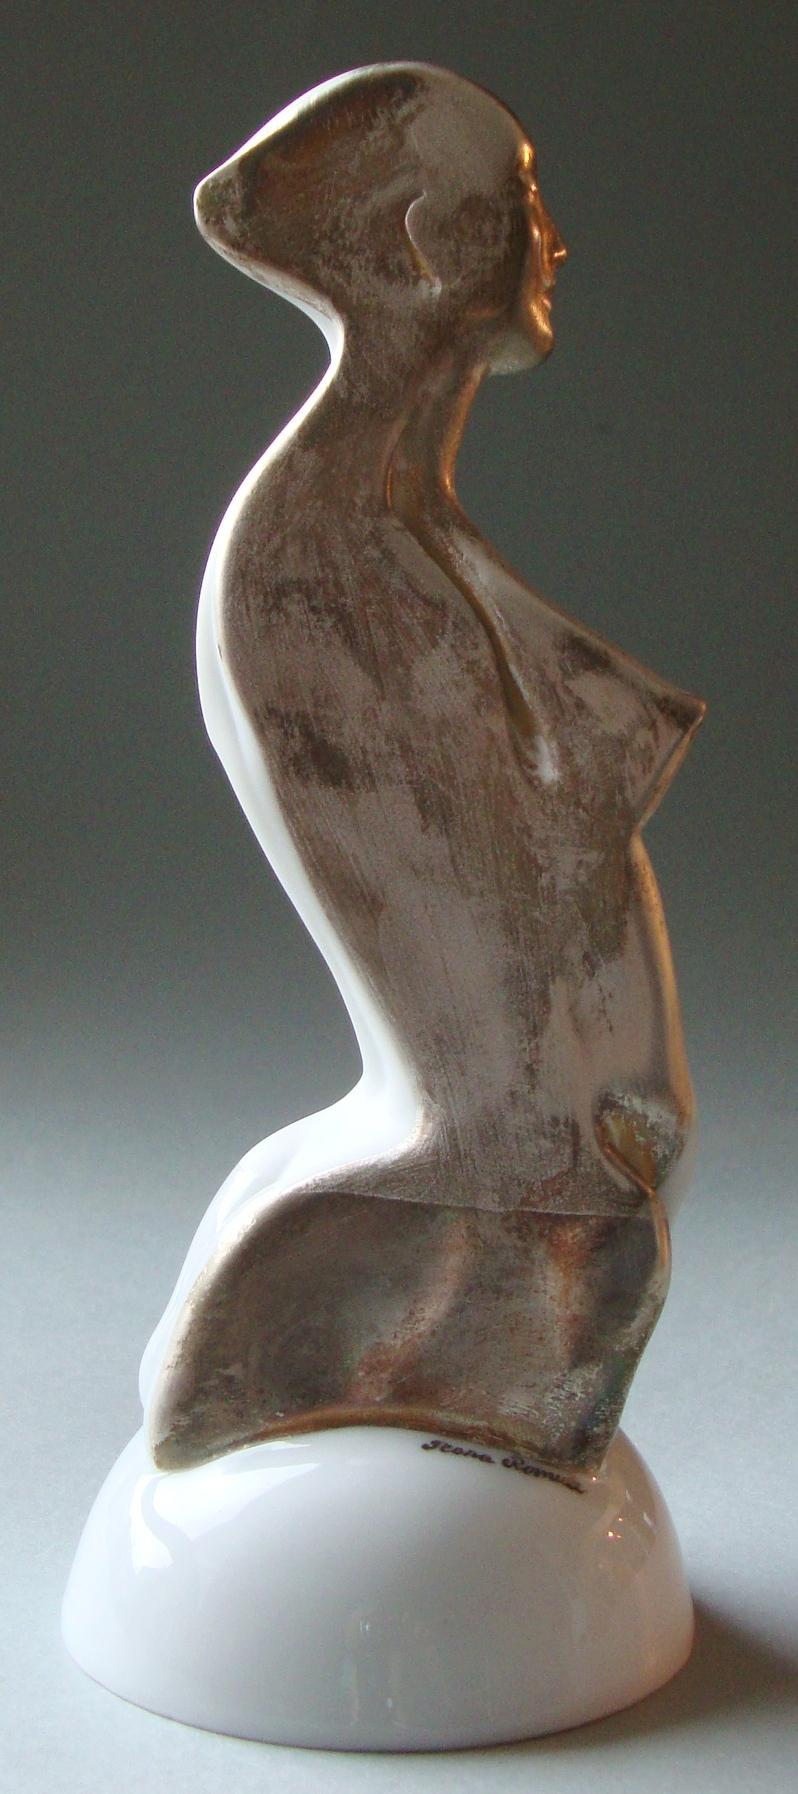 Frauenfigur auf einem Podest

Porzellan, Silber, H 20 cm
von Ilona Romule, führende Bildhauerin in Lettland

Die 